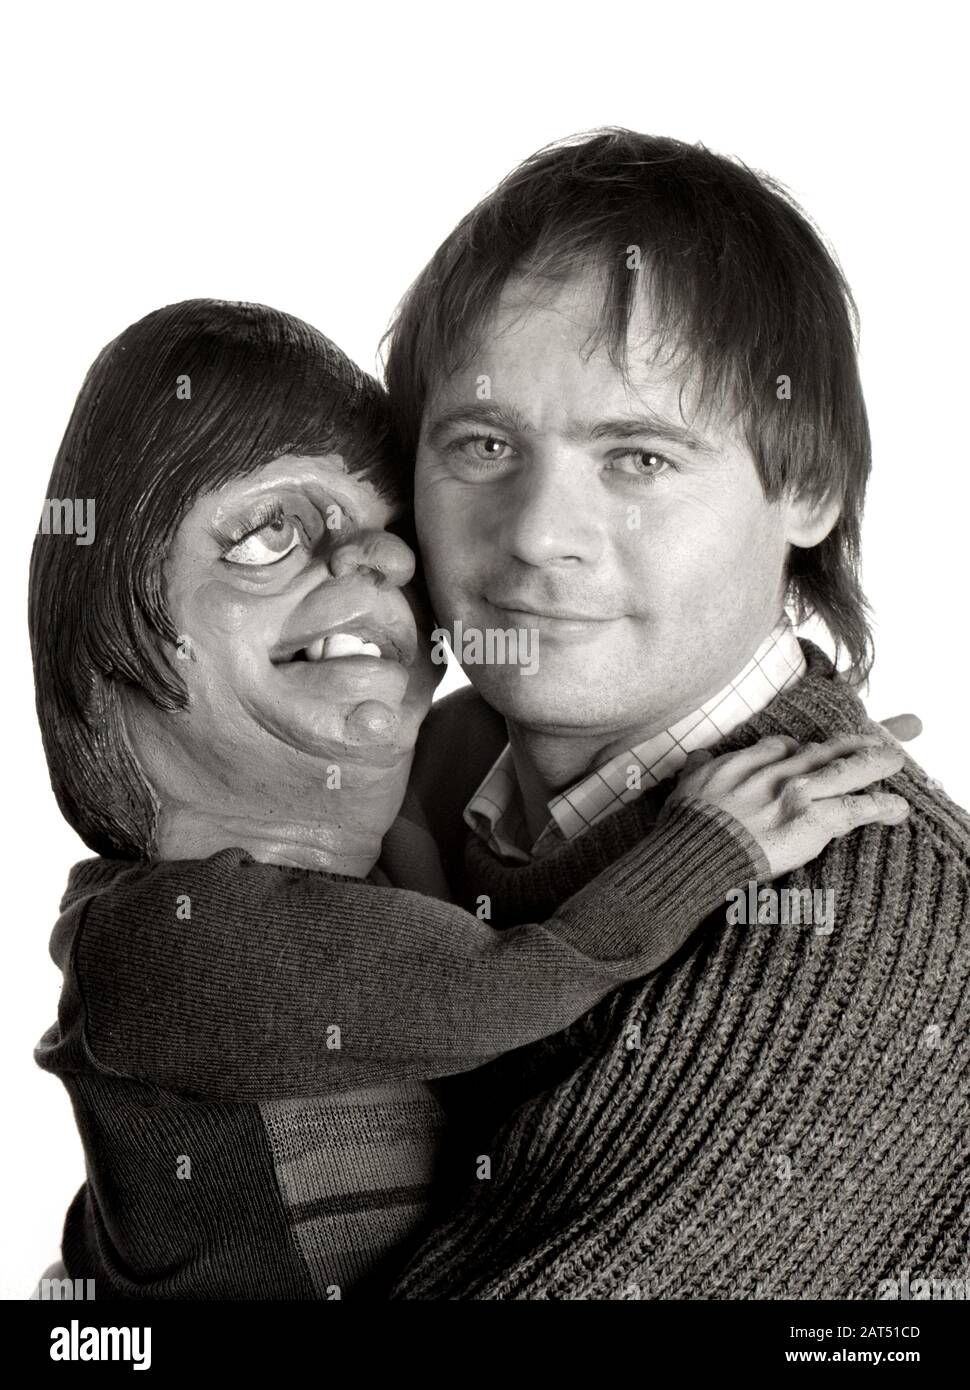 John Lloyd - Comedy Writer & Producer. Ritratto preso nel 1988 mostrandogli con la sua immagine Spitting puppet. Foto Stock